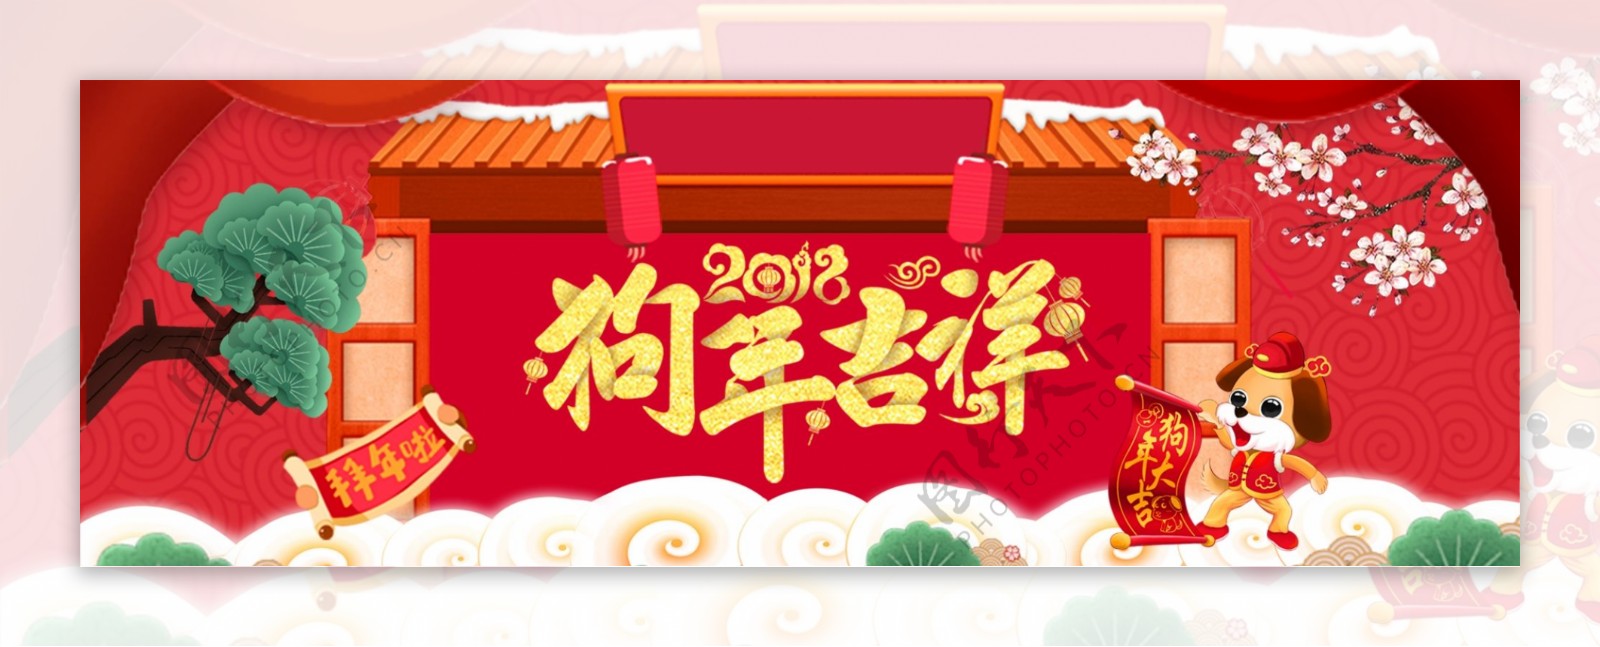 2018狗年吉祥新年快乐传统节日促销海报